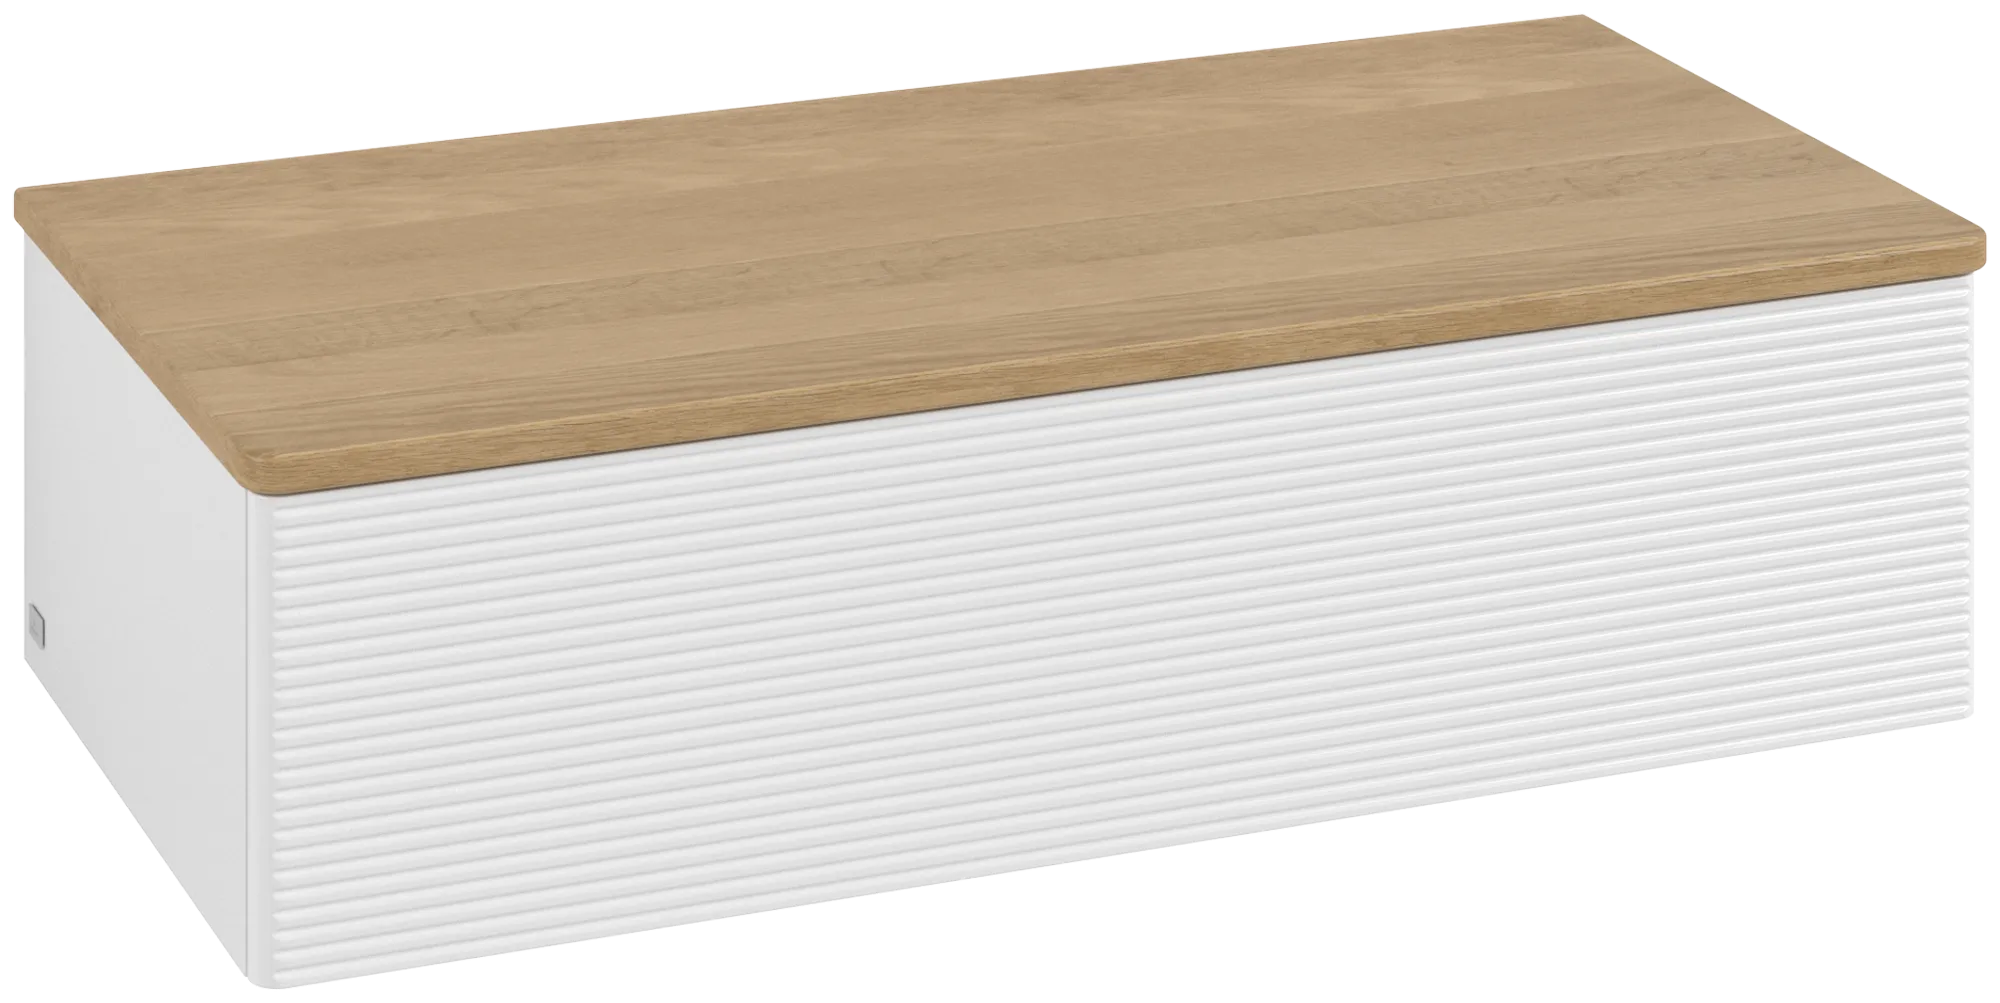 Bild von VILLEROY BOCH Antao Sideboard, mit Beleuchtung, 1 Auszug, 1000 x 268 x 500 mm, Front mit Struktur, Glossy White Lacquer / Honey Oak #L40101GF